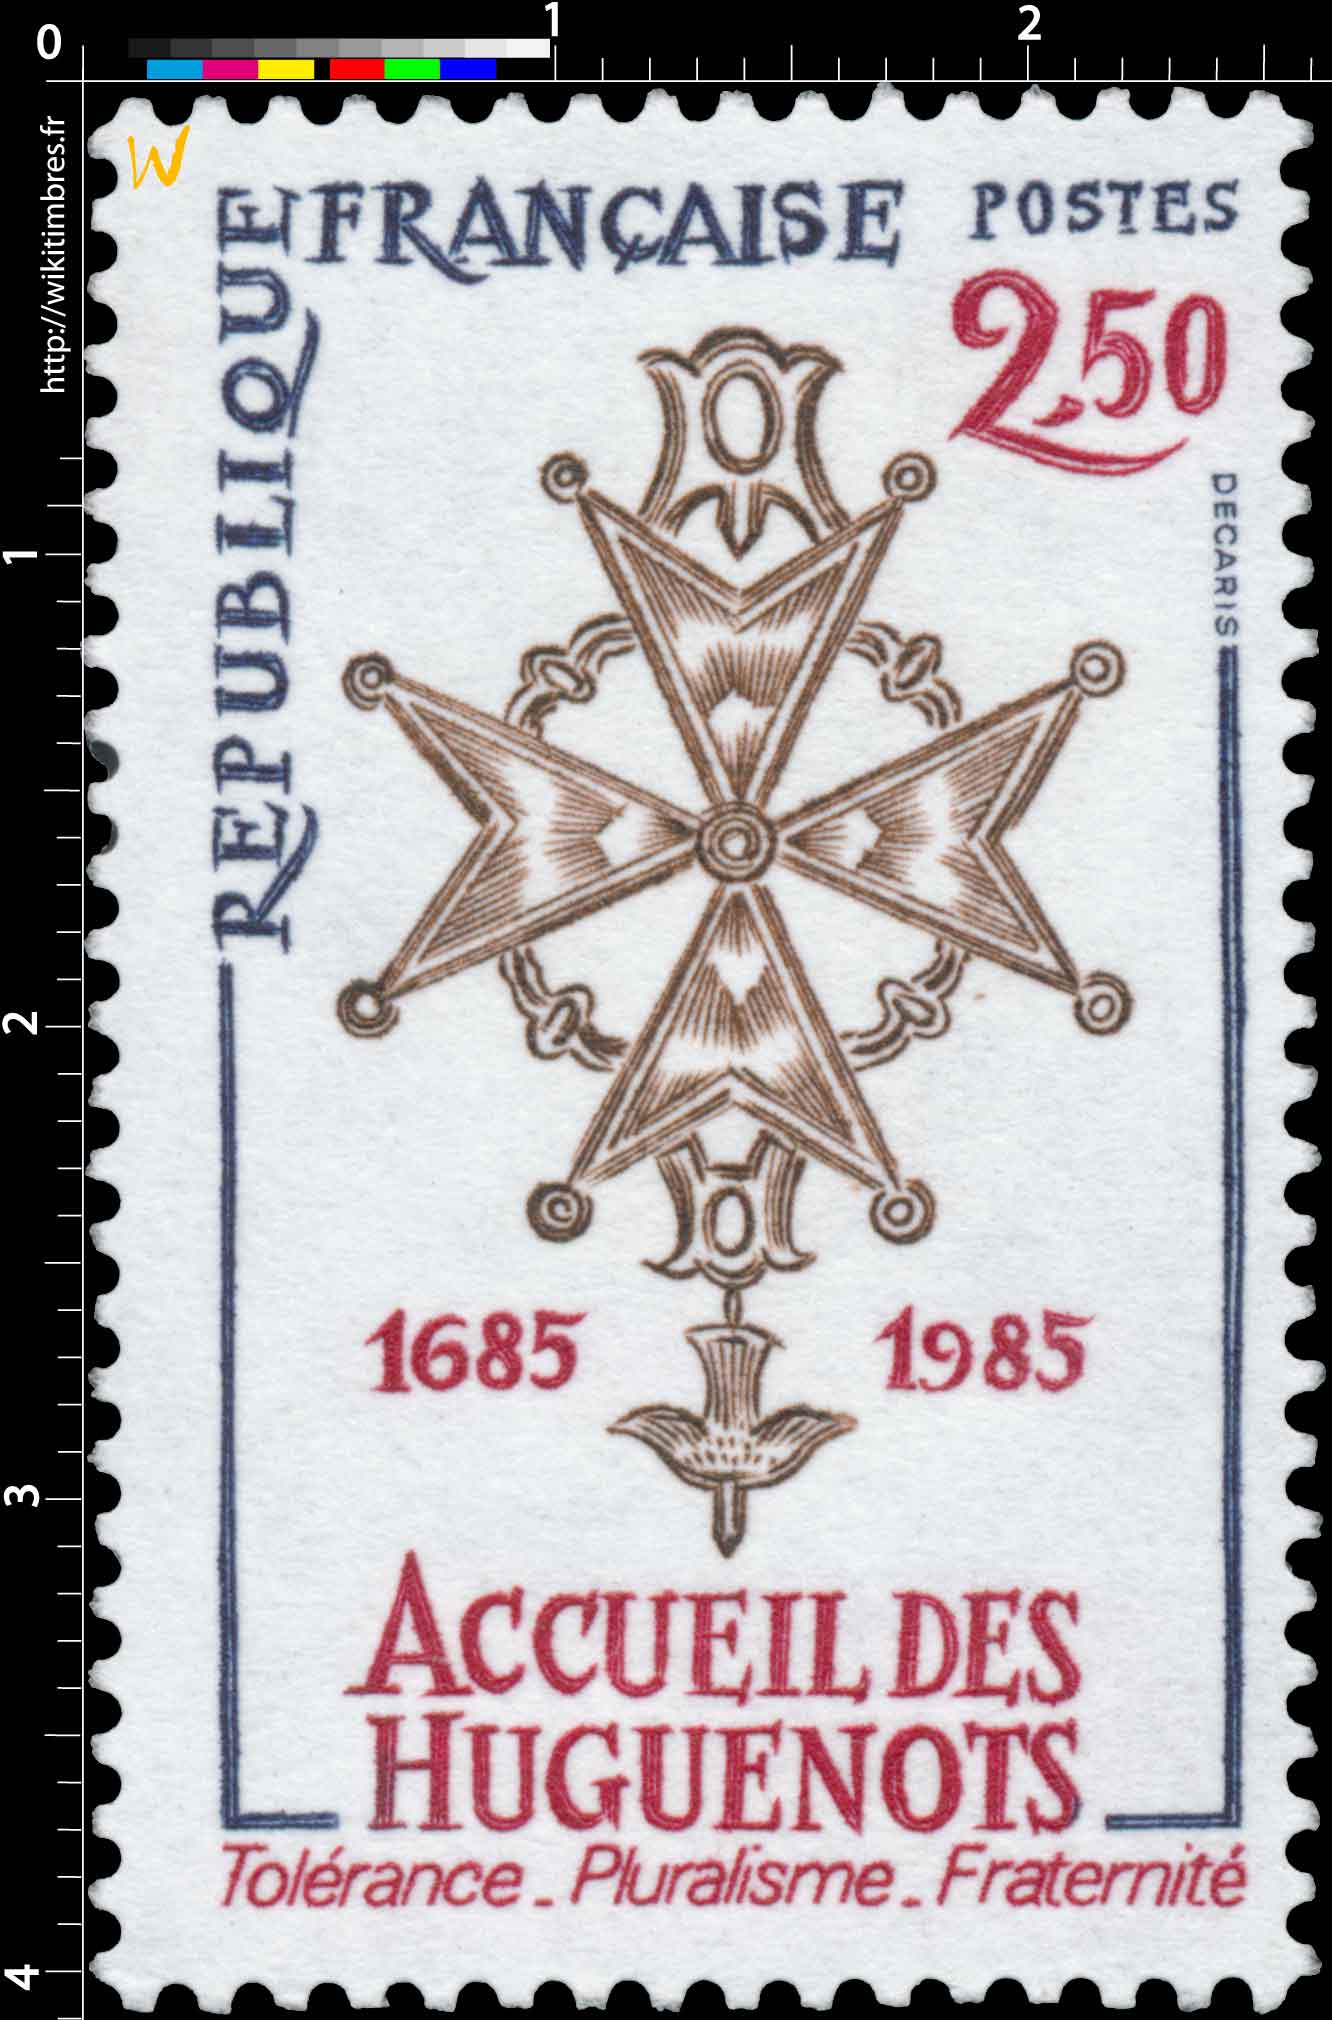 ACCUEIL DES HUGUENOTS 1685-1985 Tolérance - Pluralisme - Fraternité